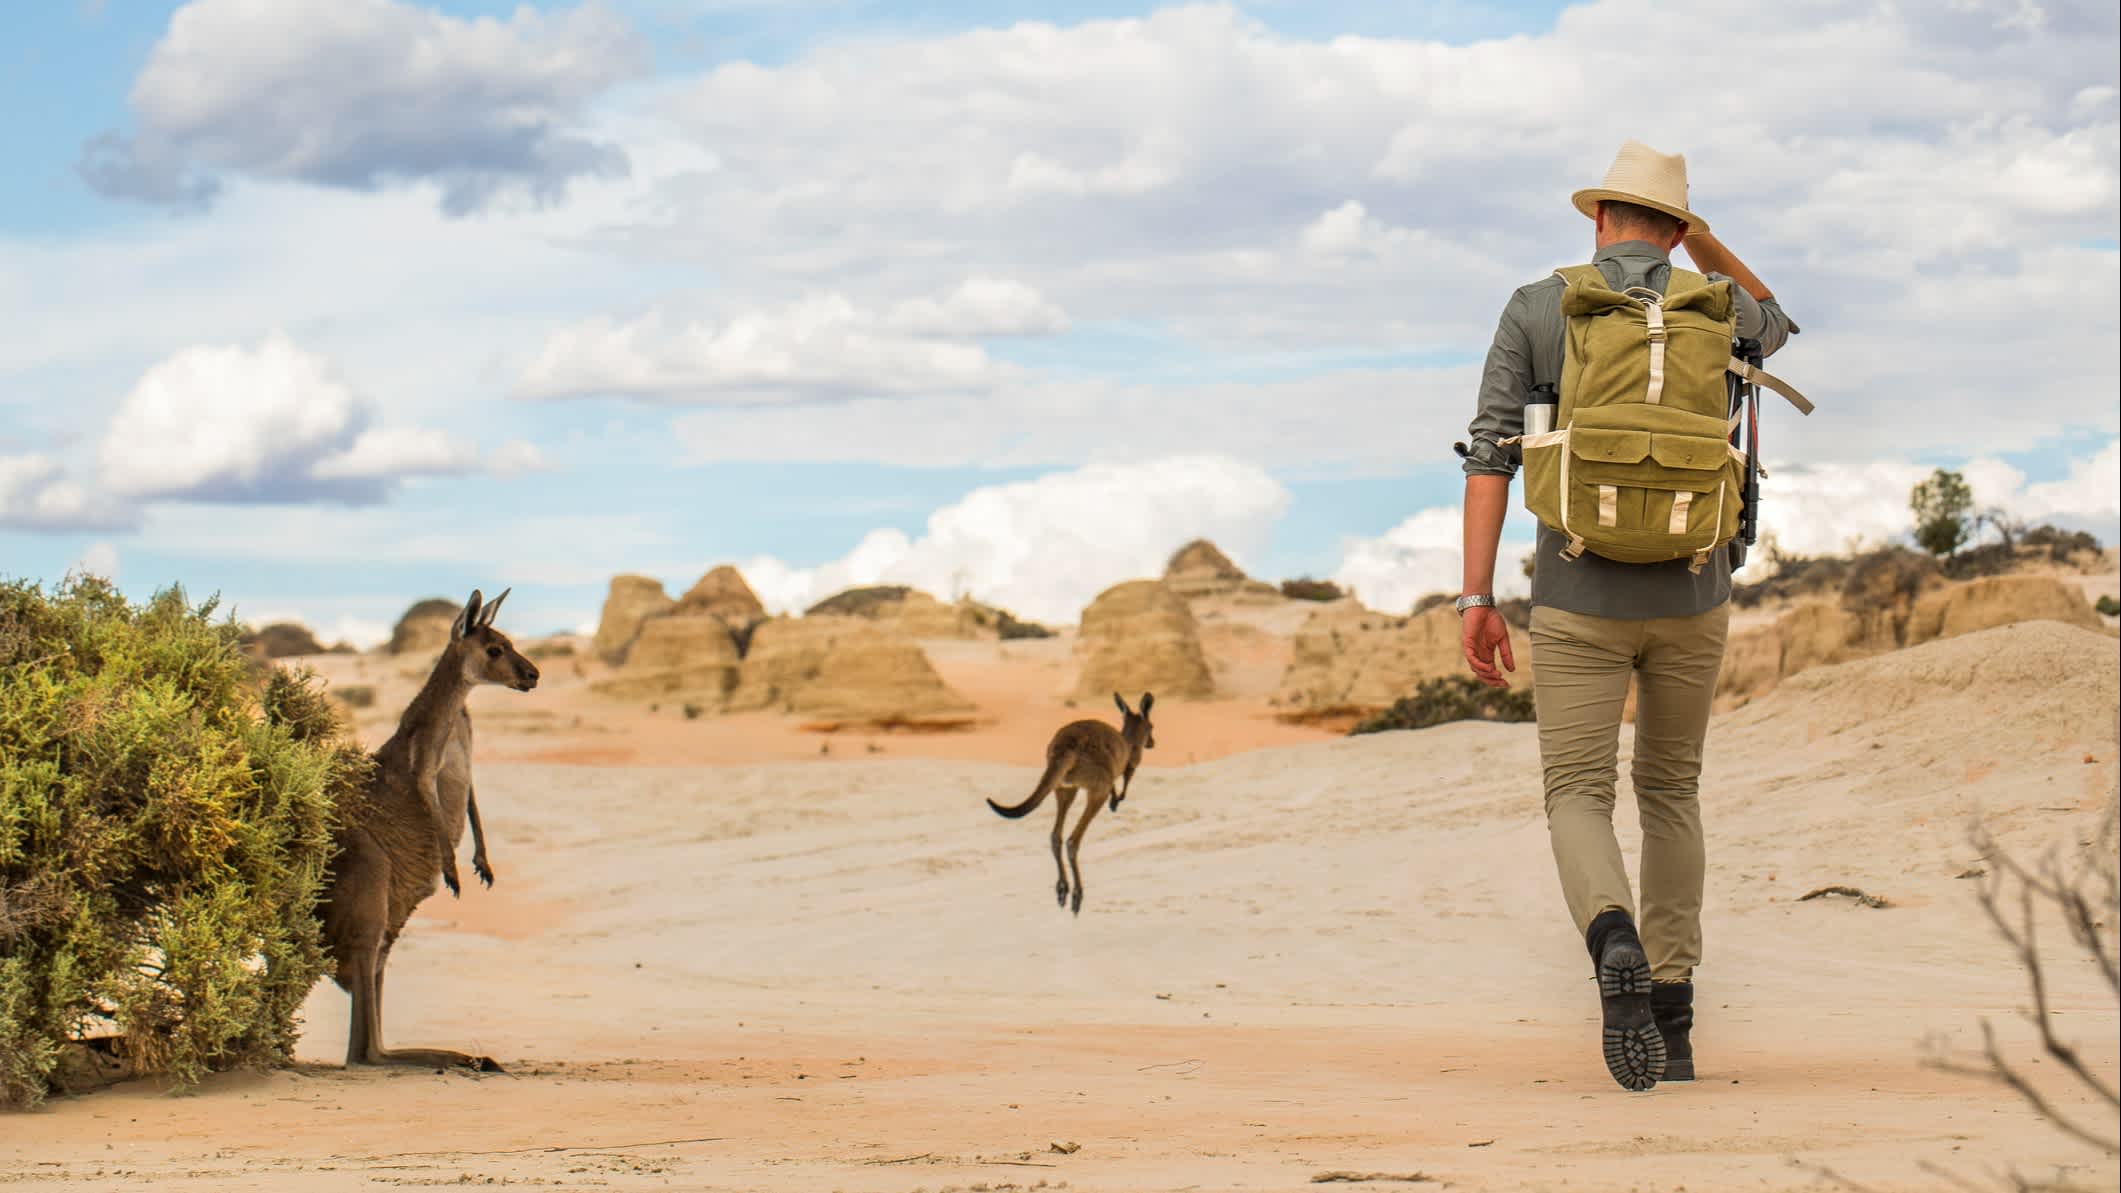 Un homme et des kangourous dans le désert de l'outback australien

